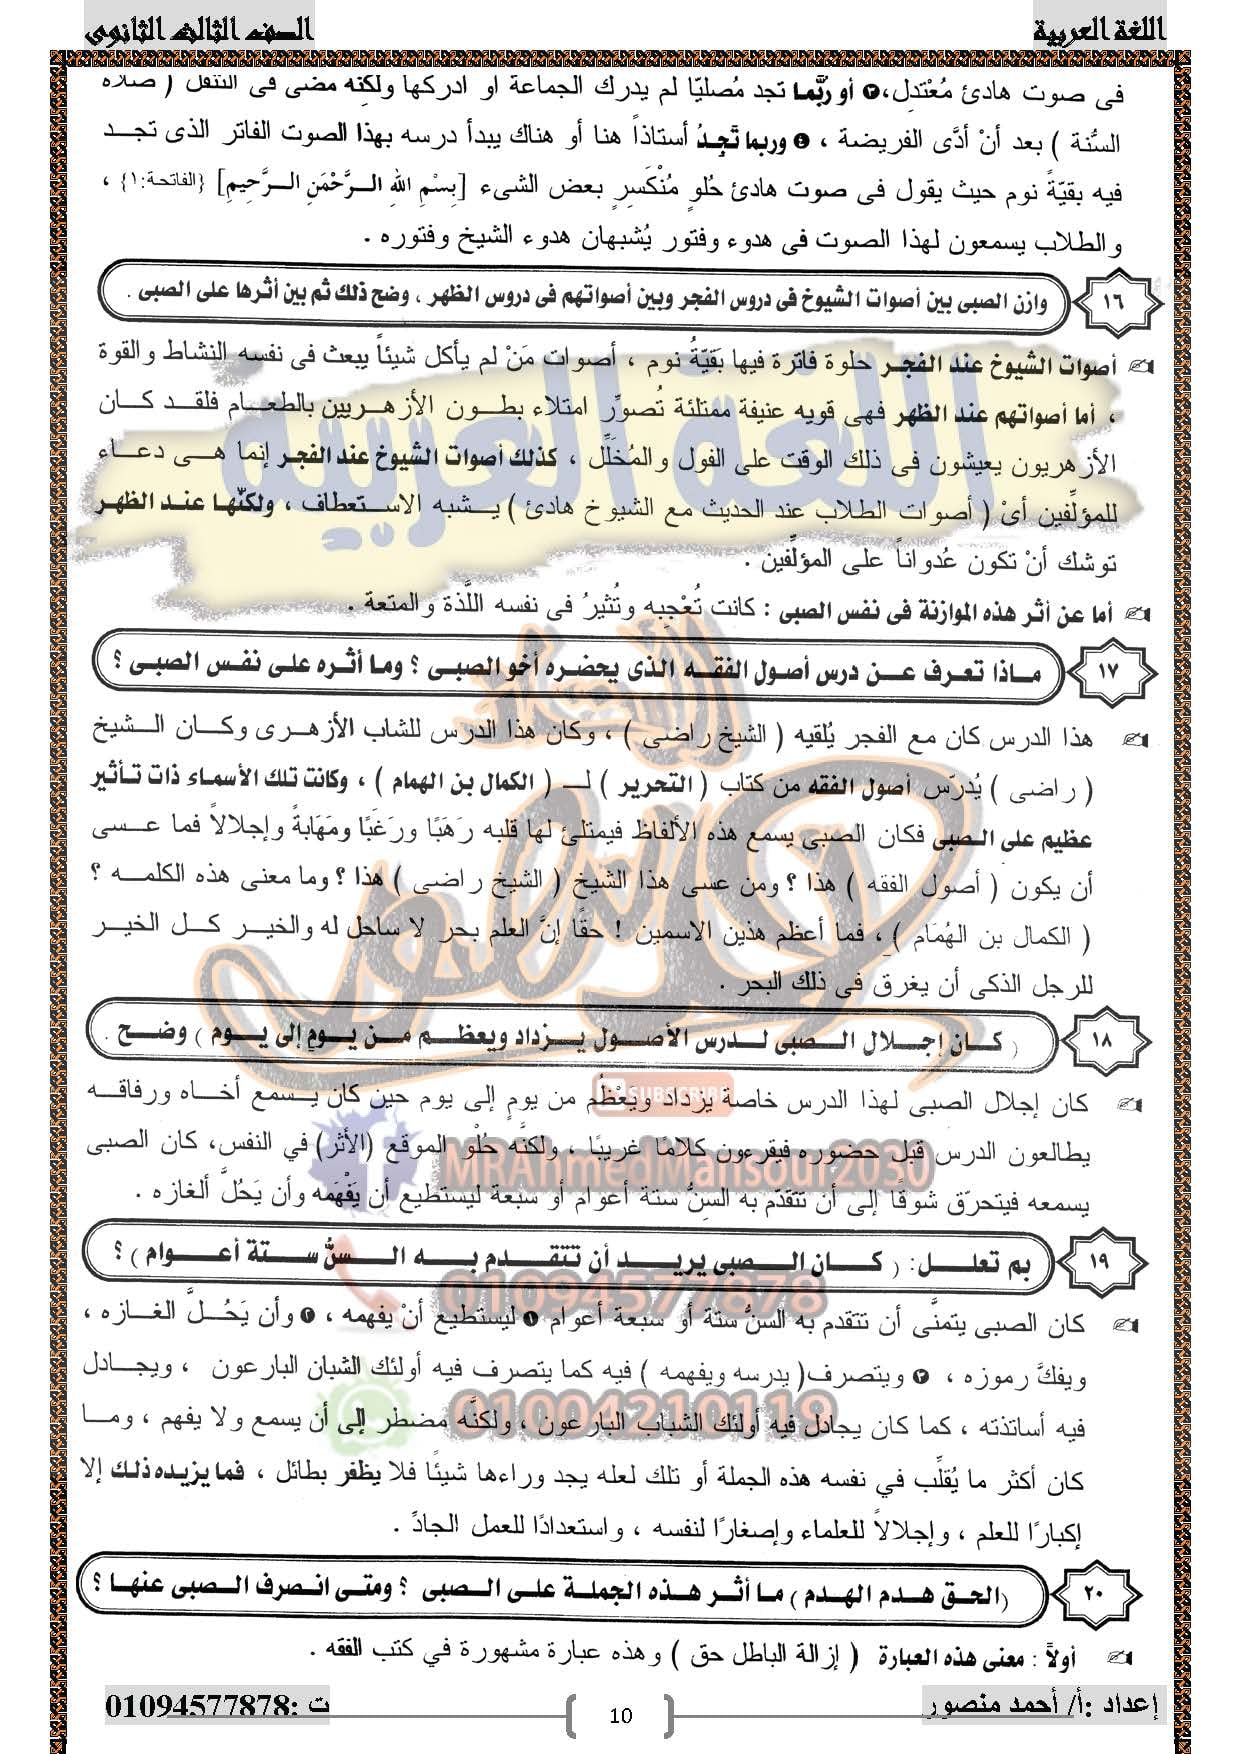 مراجعة قصة الأيام الفصول 1 و2 و3 س و ج  للصف الثالث الثانوي أ/ أحمد منصور 11